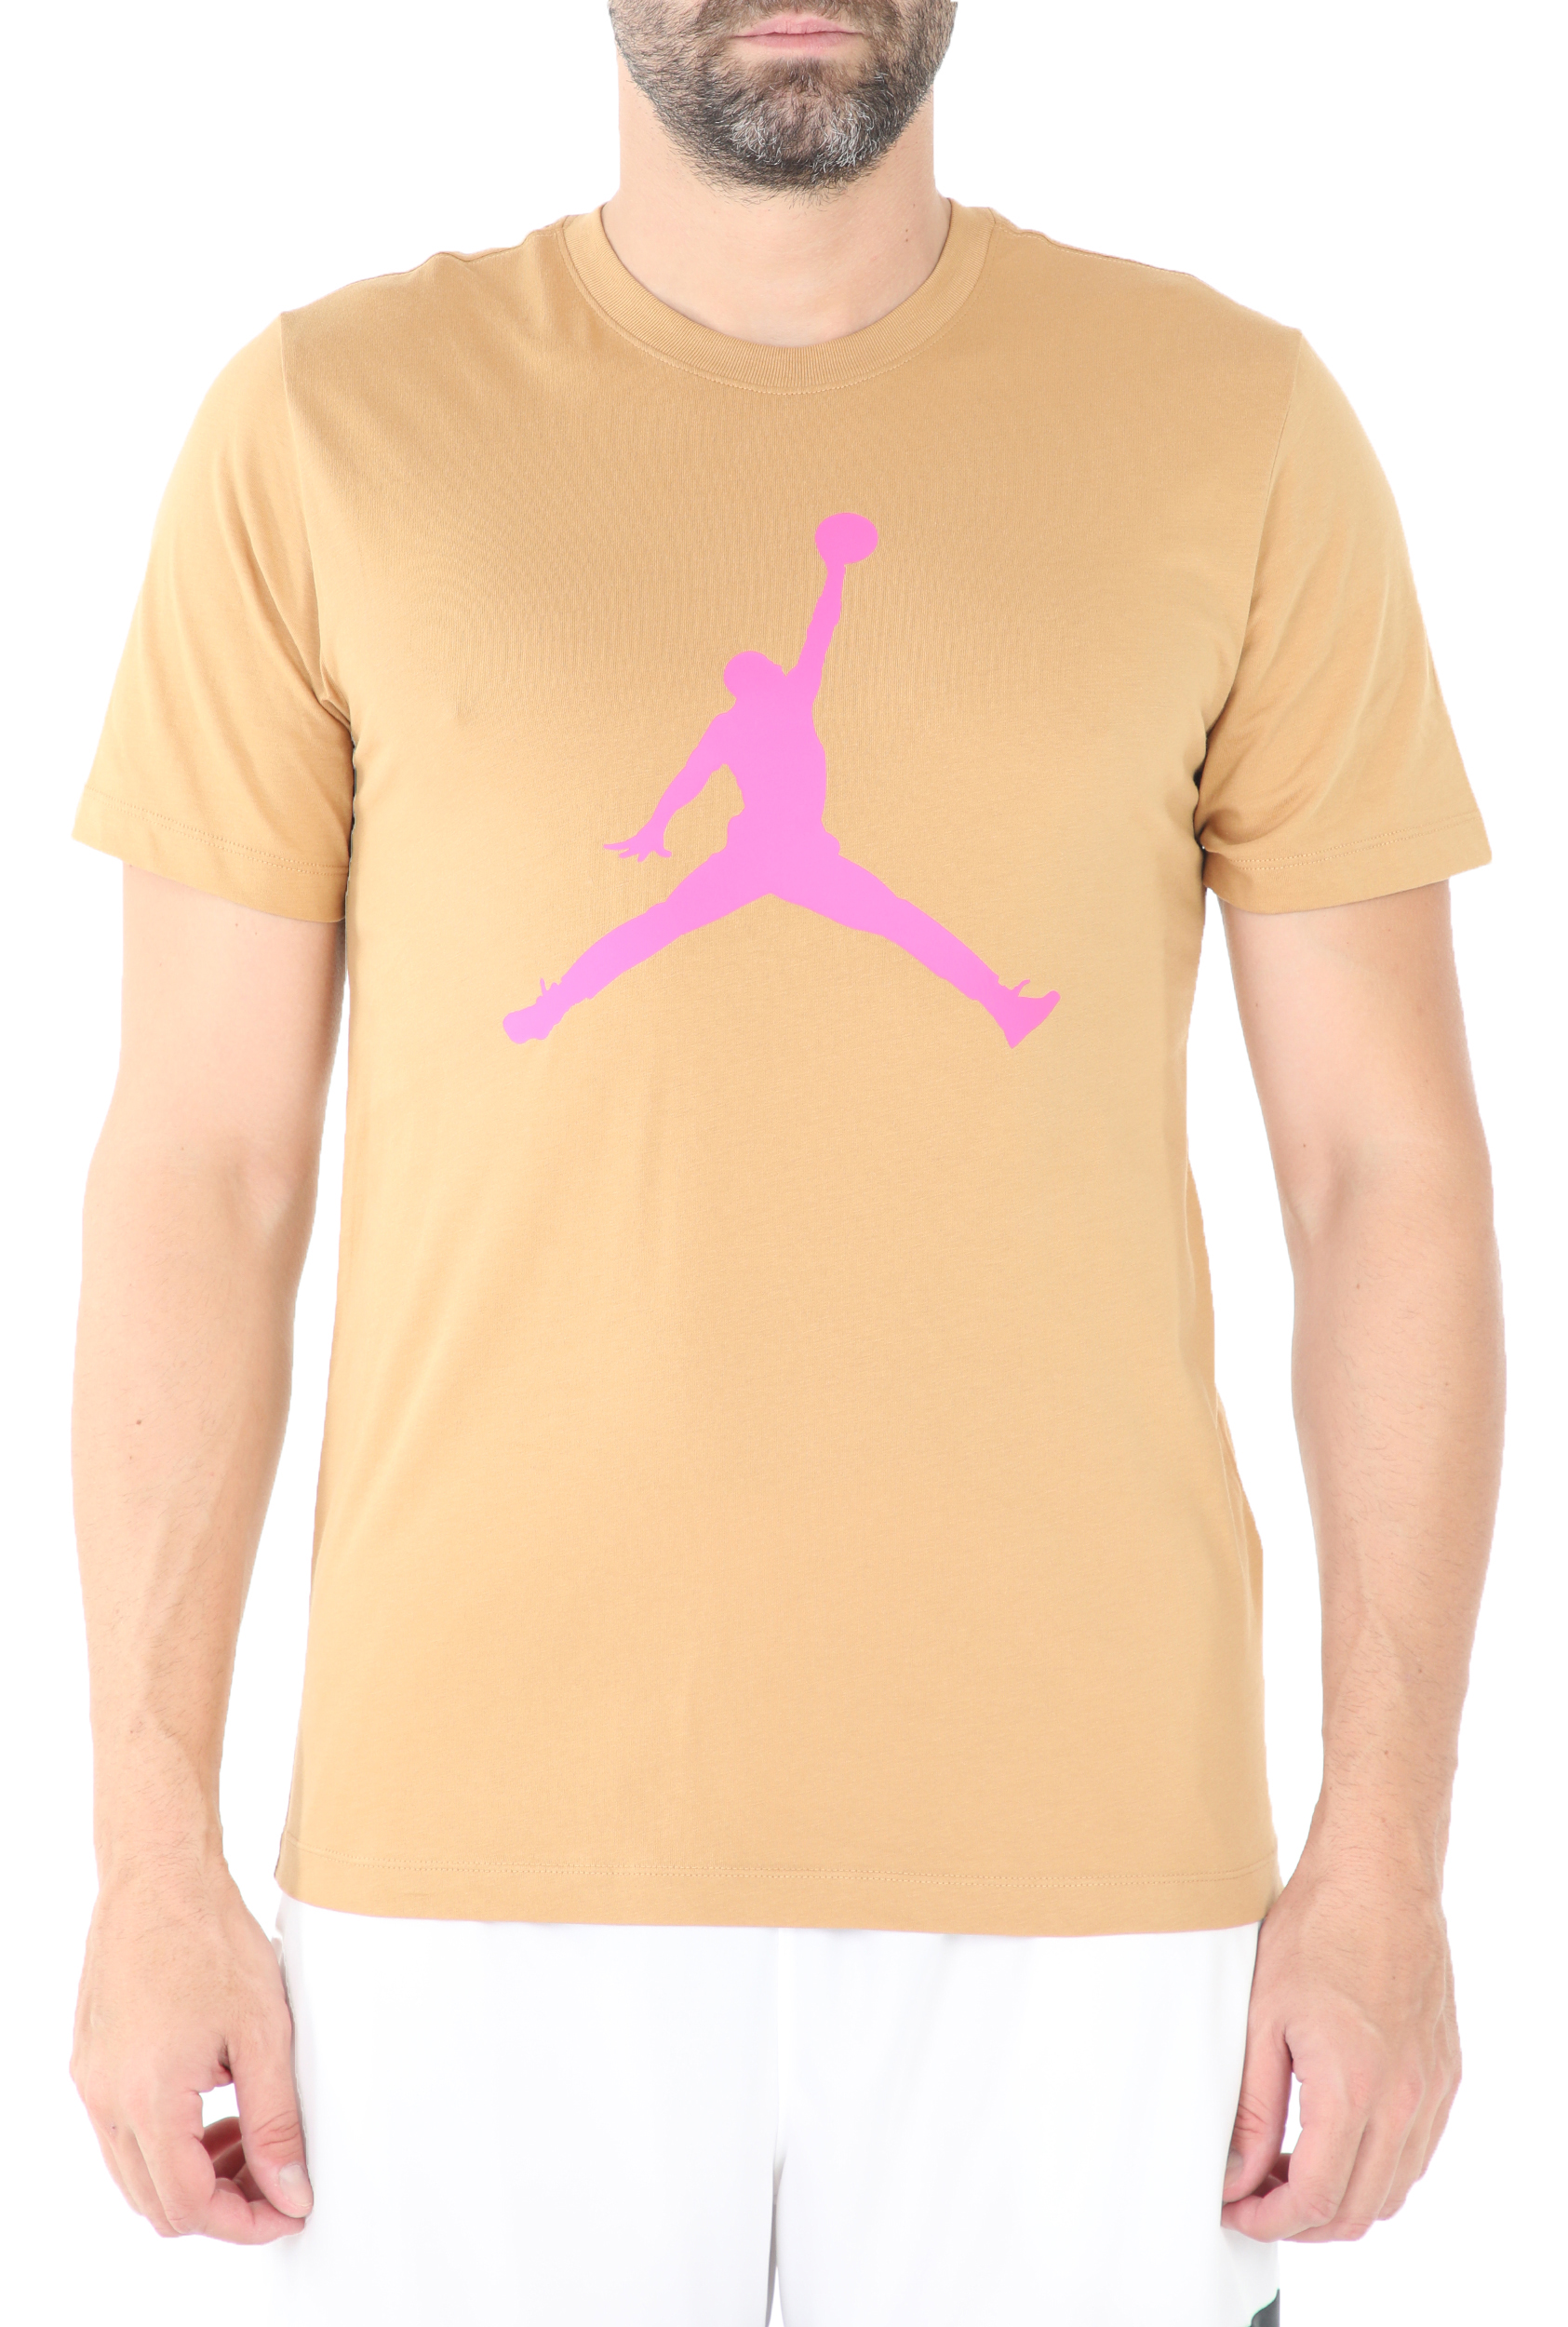 Ανδρικά/Ρούχα/Αθλητικά/T-shirt NIKE - Ανδρικό t-shirt ΝΙΚΕ J JUMPMAN μπεζ